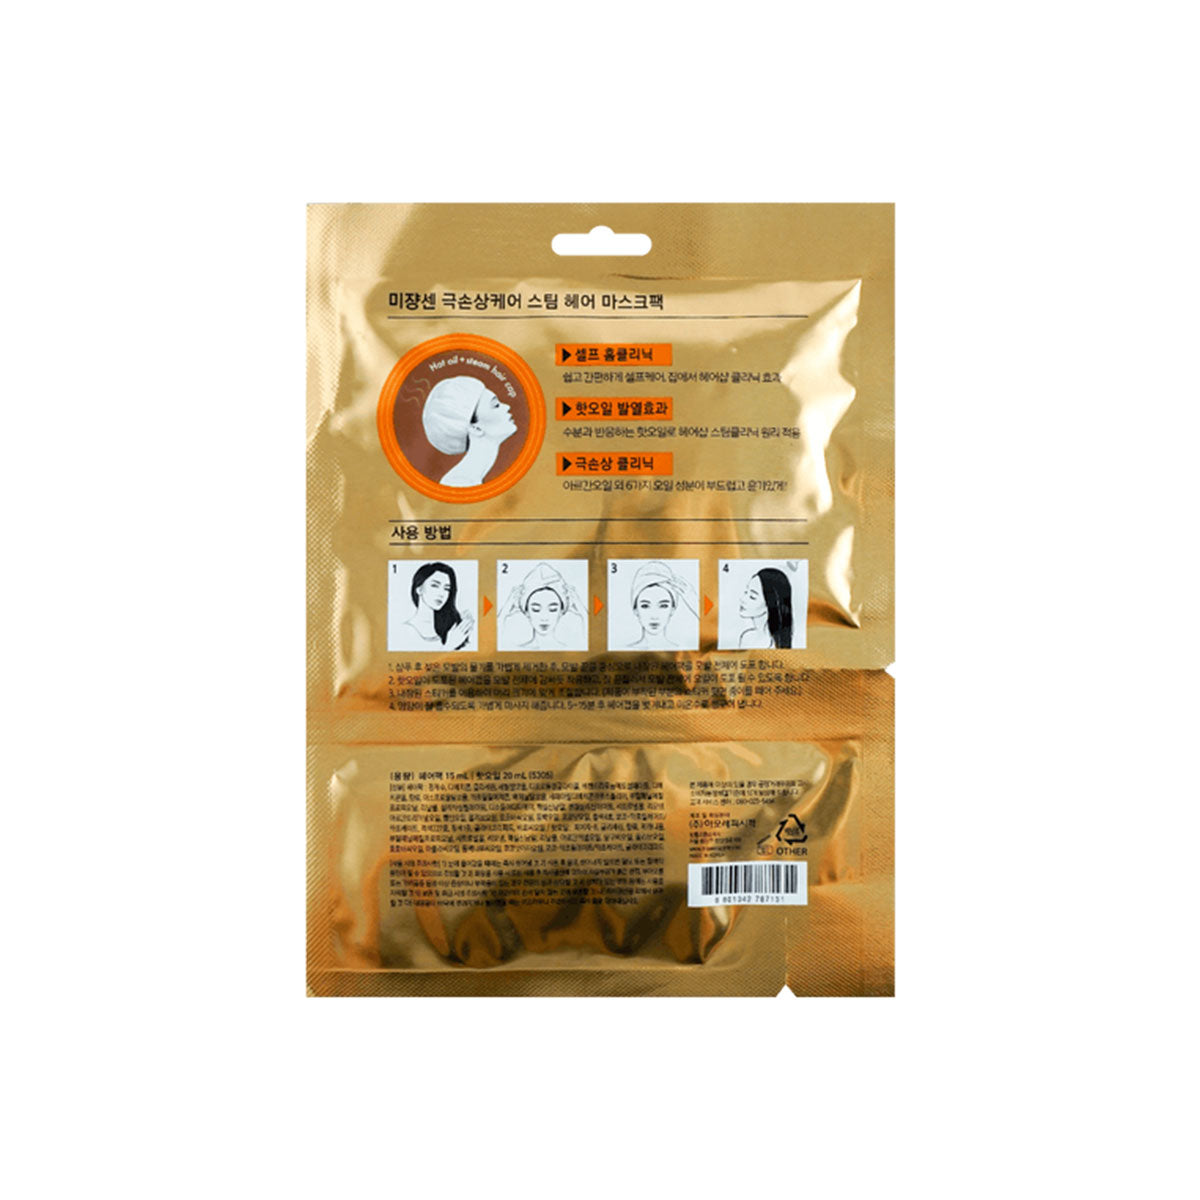 Perfect Repair Hair Mask Pack 15ml + Hair Oil 20ml